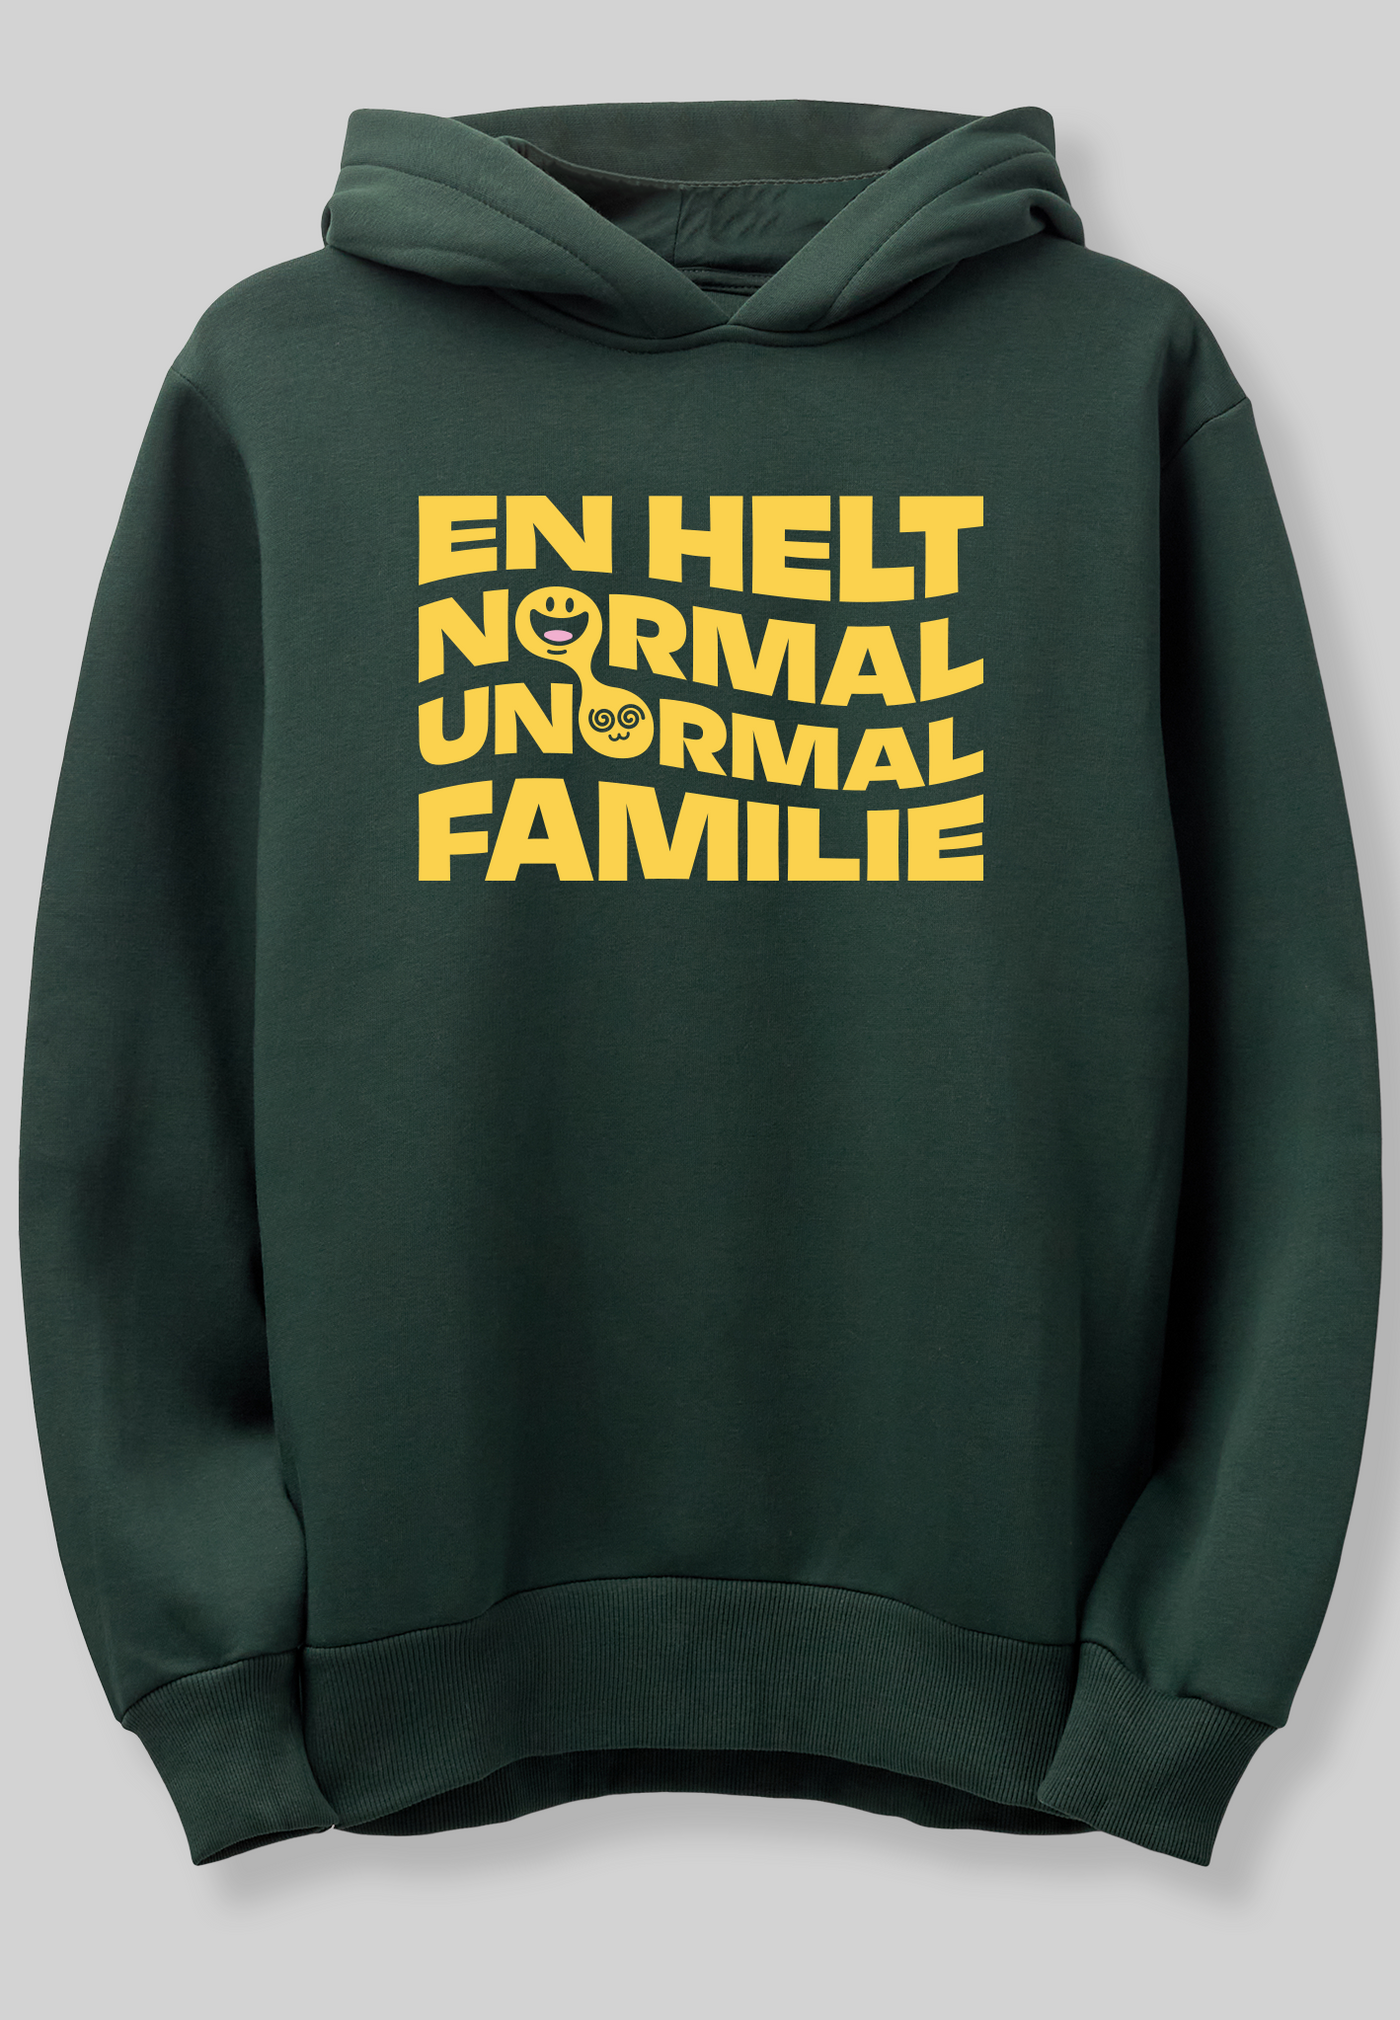 Familien Münster - "NORMAL / UNORMAL FAMILIE" - Grøn hoodie